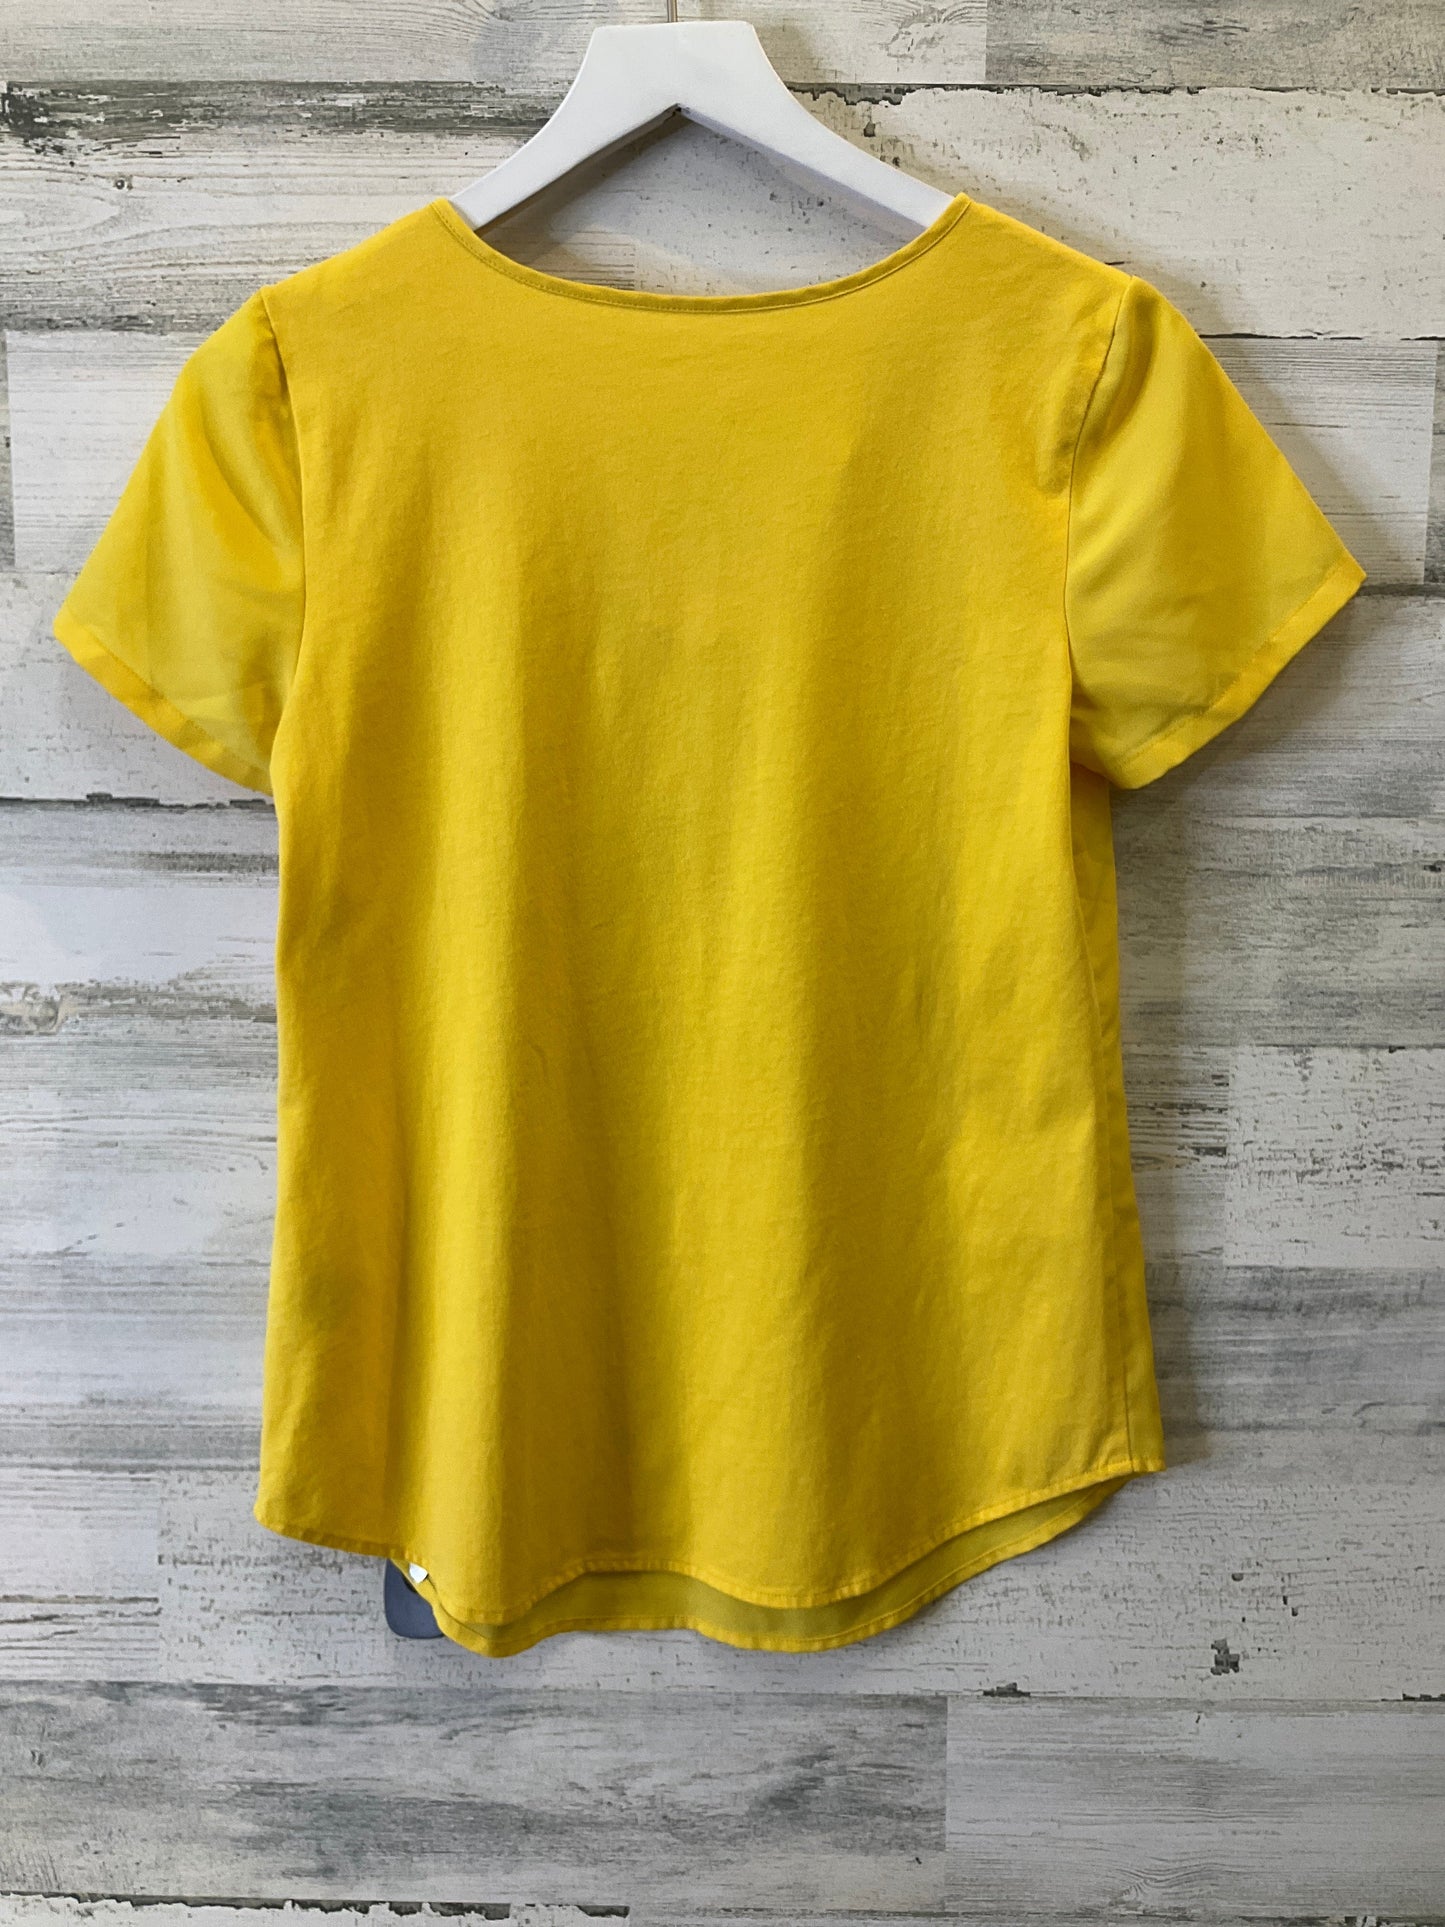 Yellow Top Short Sleeve Van Heusen, Size Xs